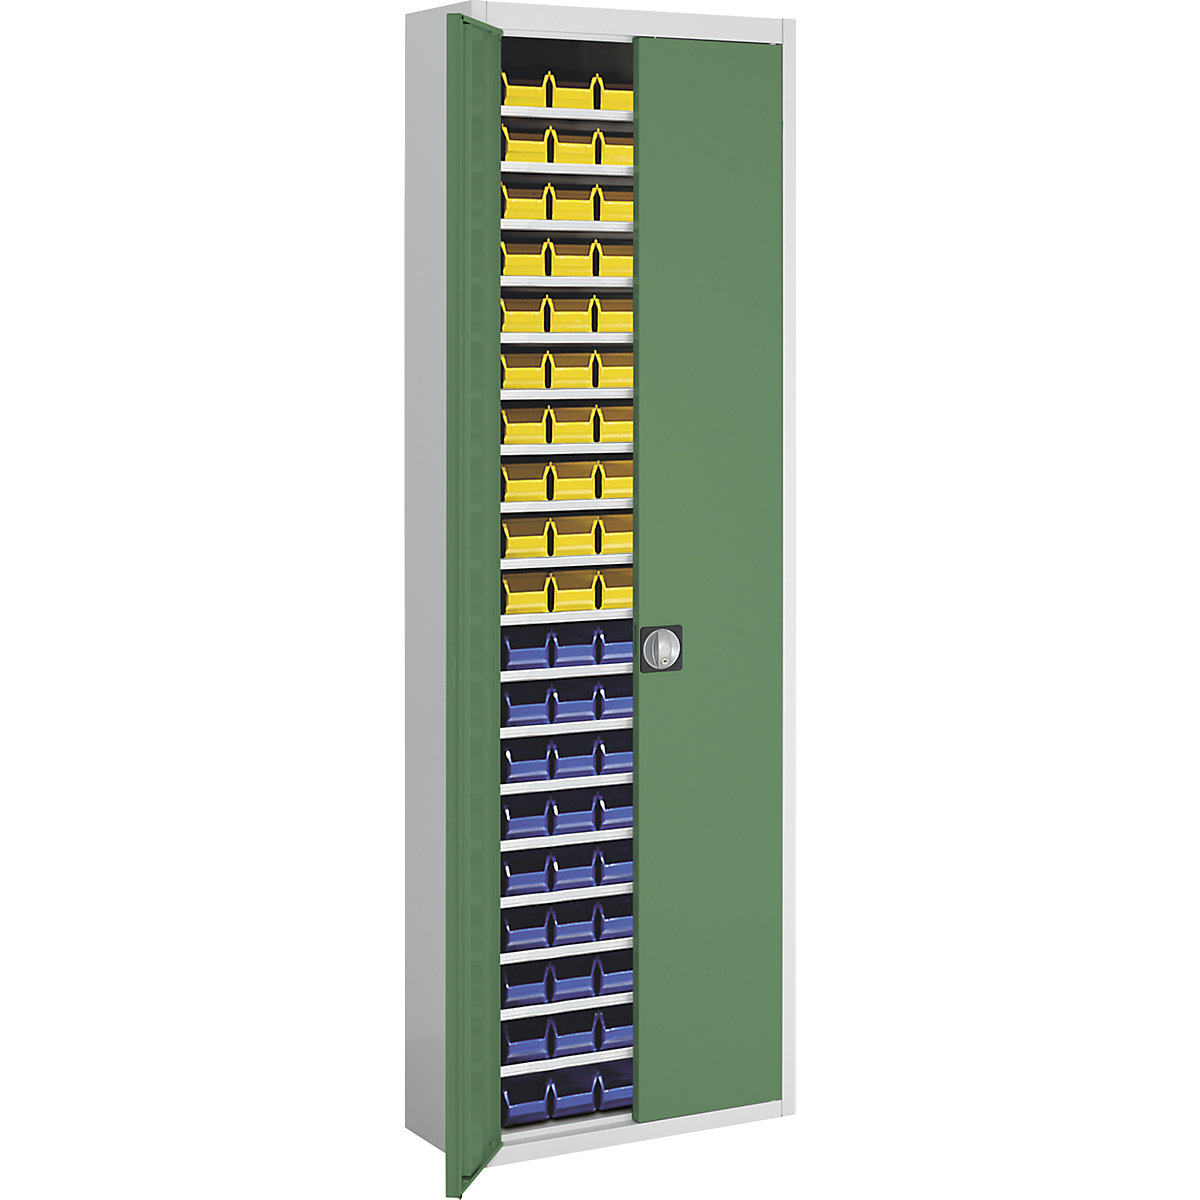 Armário de armazém com caixas de armazenagem à vista – mauser, AxLxP 2150 x 680 x 280 mm, duas cores, corpo em cinzento, portas em verde, 114 caixas-14